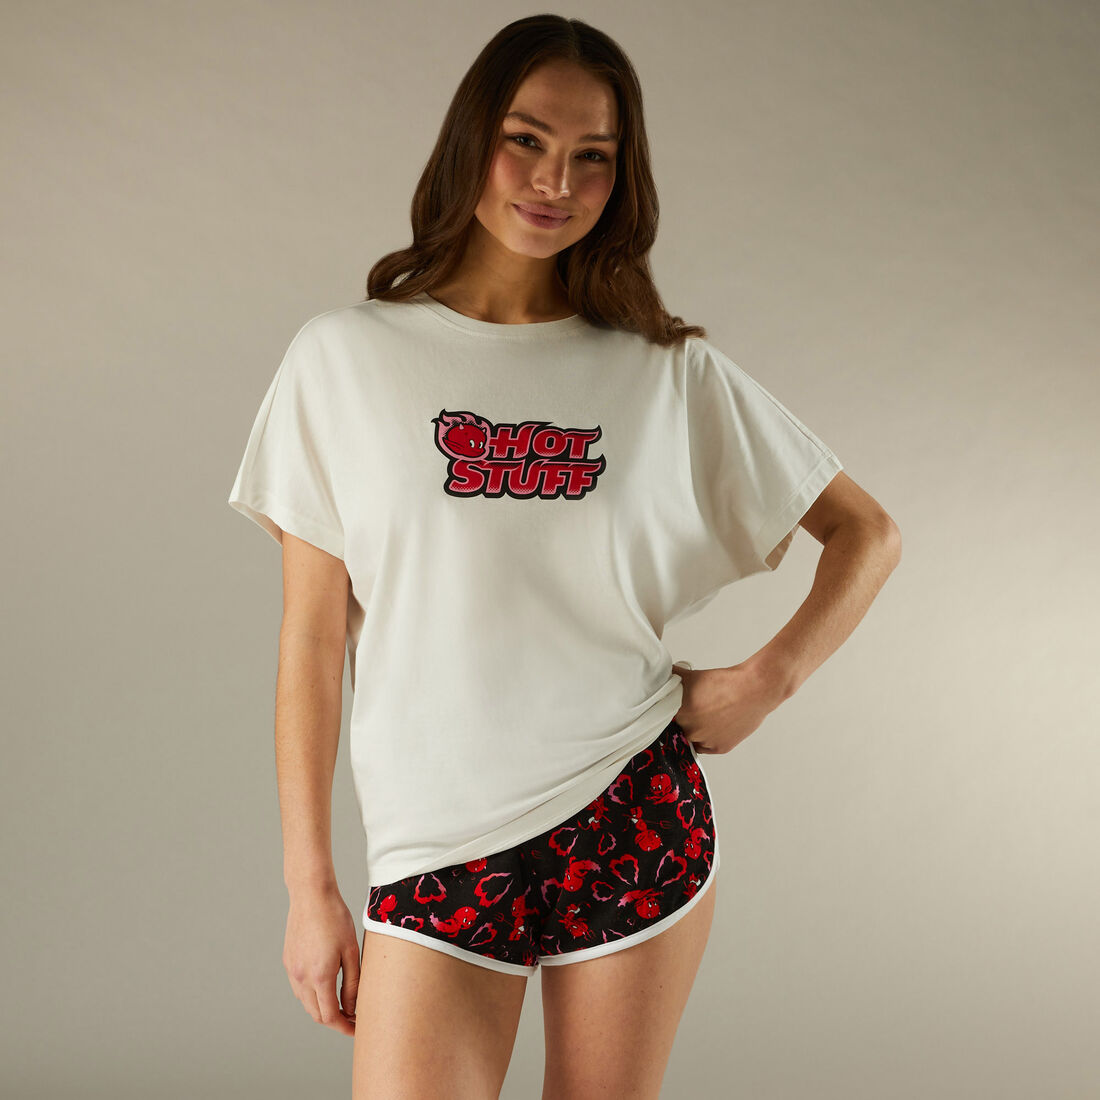 Hot Stuff printed shorts;